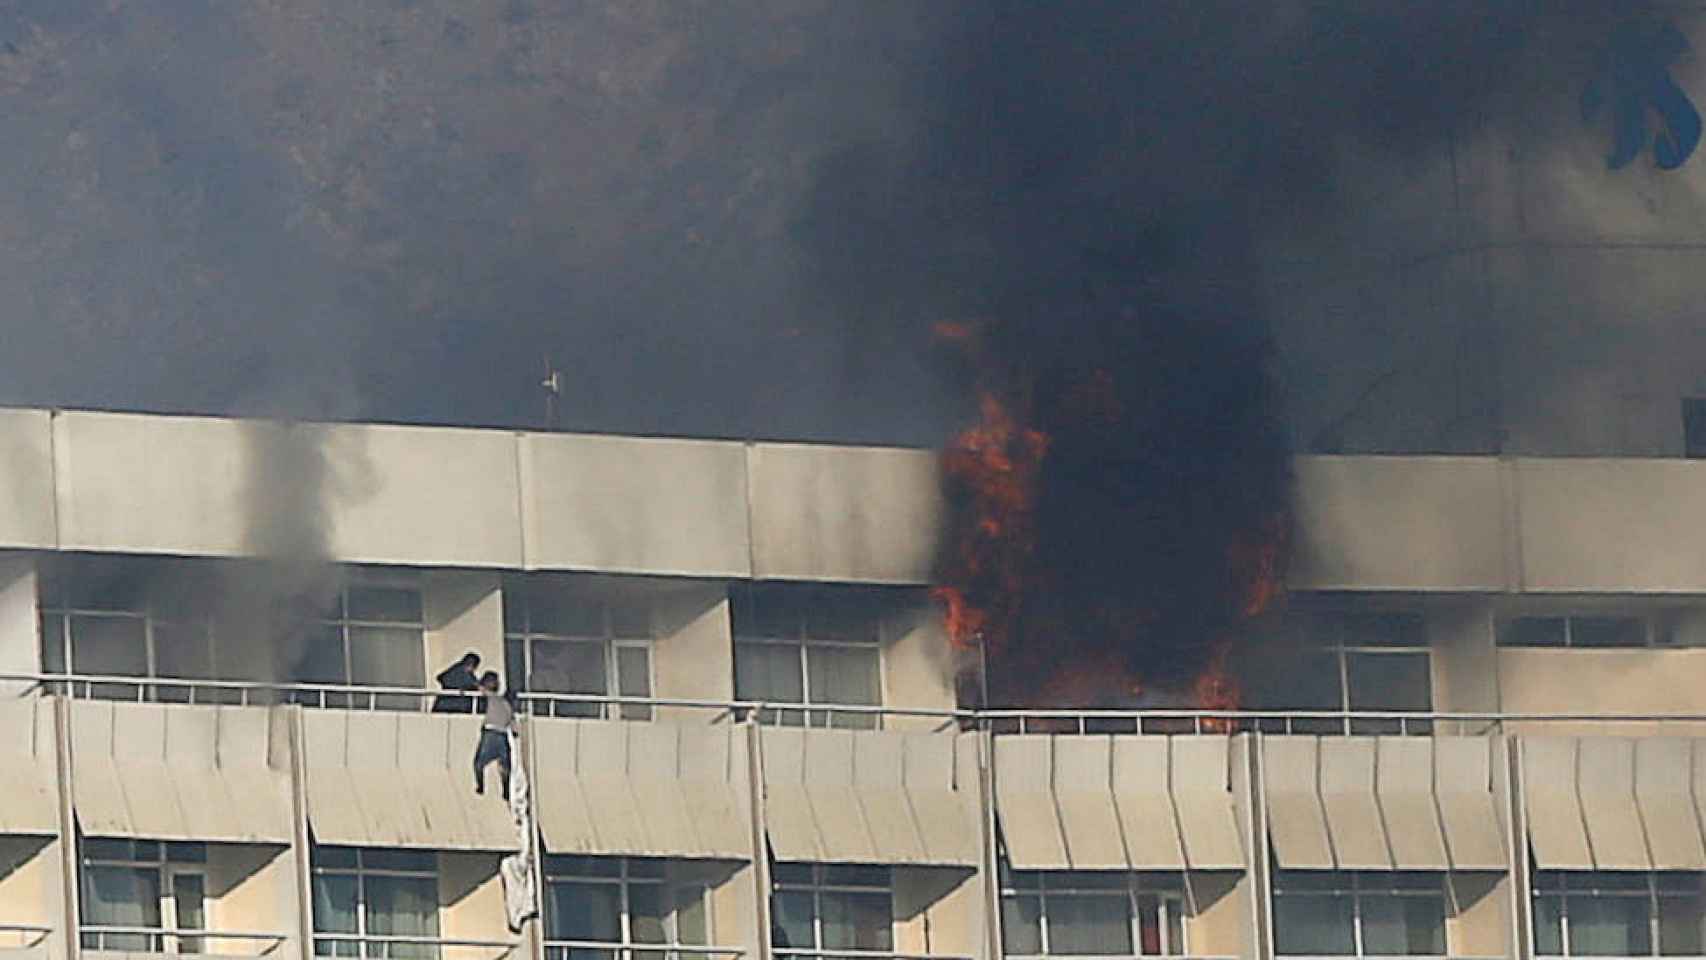 Un hombre trata de escapar del hotel atacado en llamas